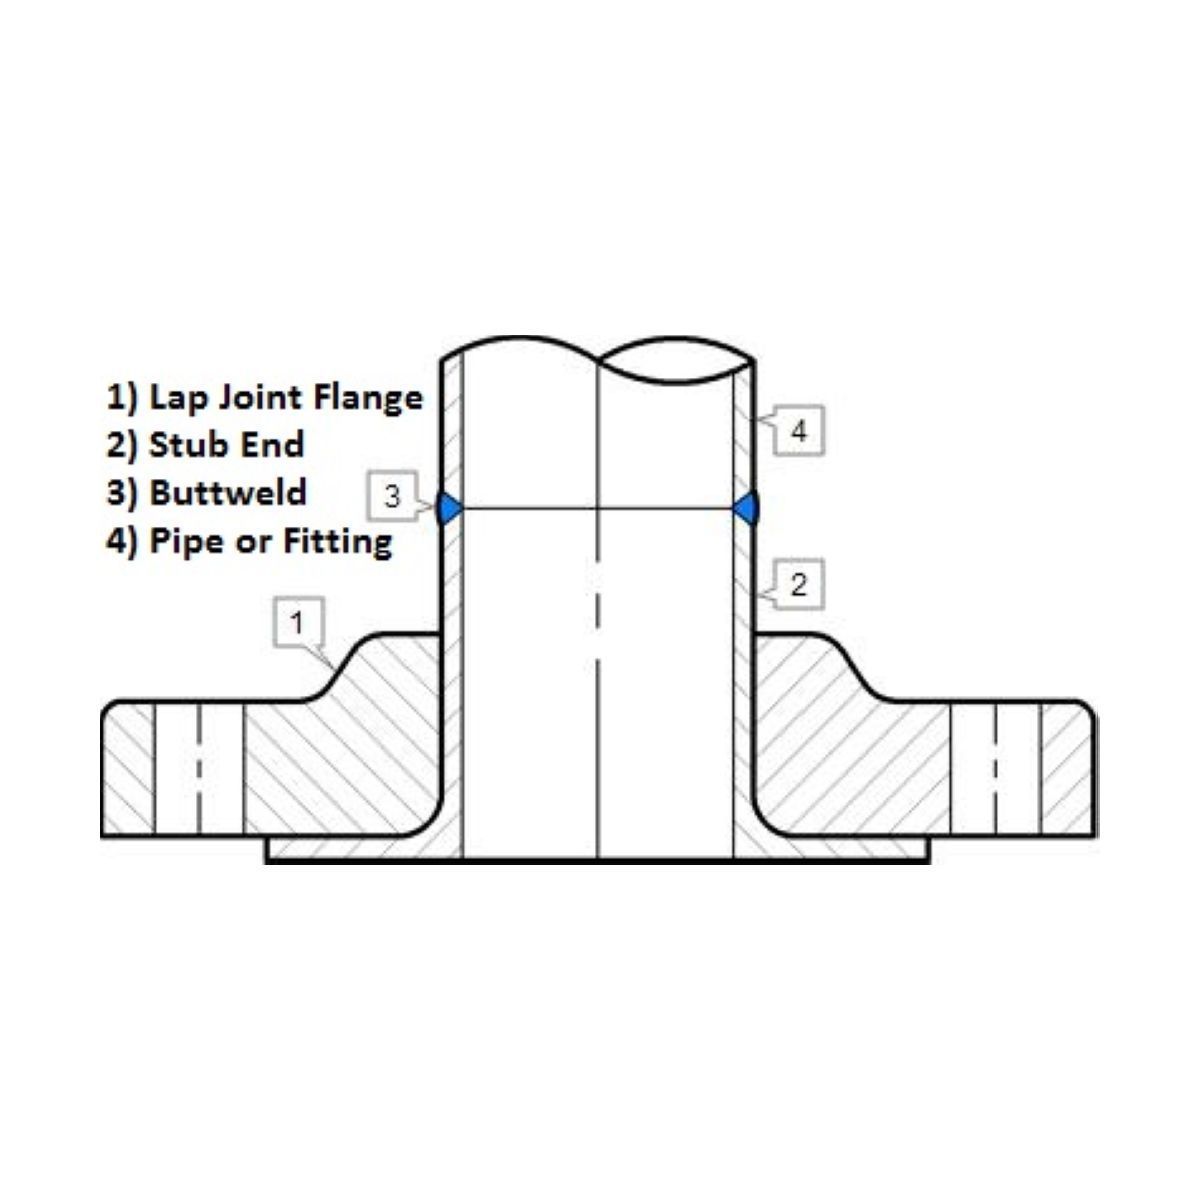 Lap Joint Flange | LF2 | Diagram